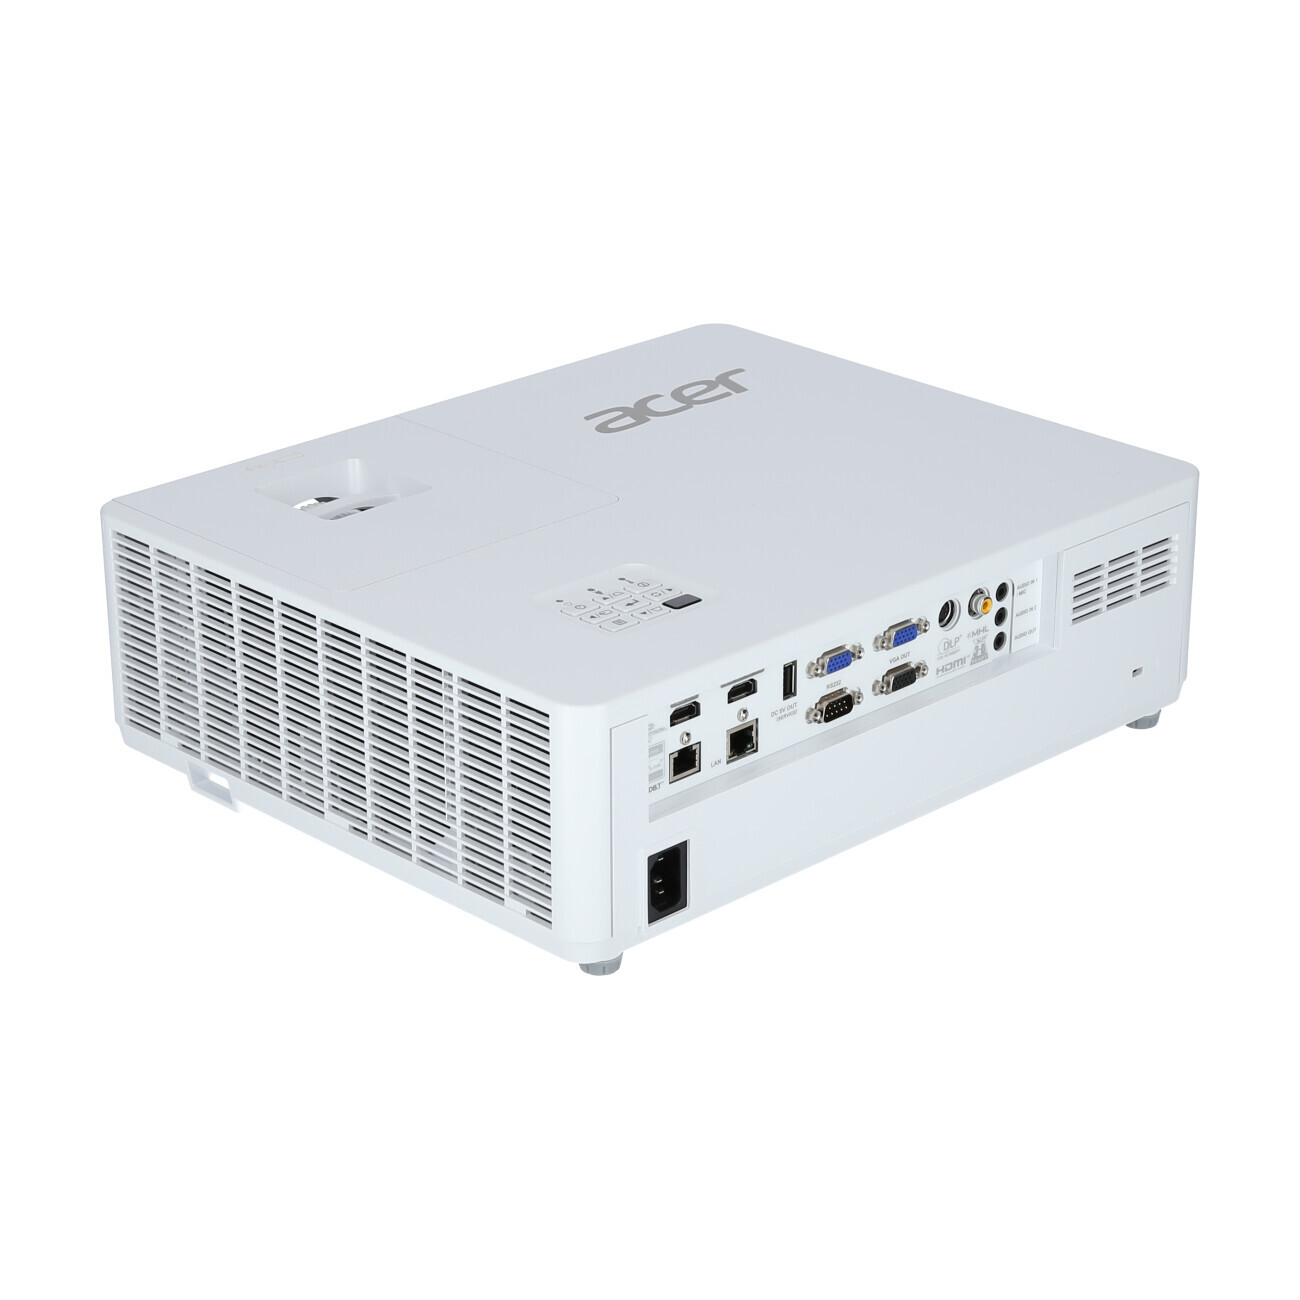 Vorschau: Acer PL6510 Installationsbeamer mit 5500 Lumen und Full-HD Auflösung - Demo